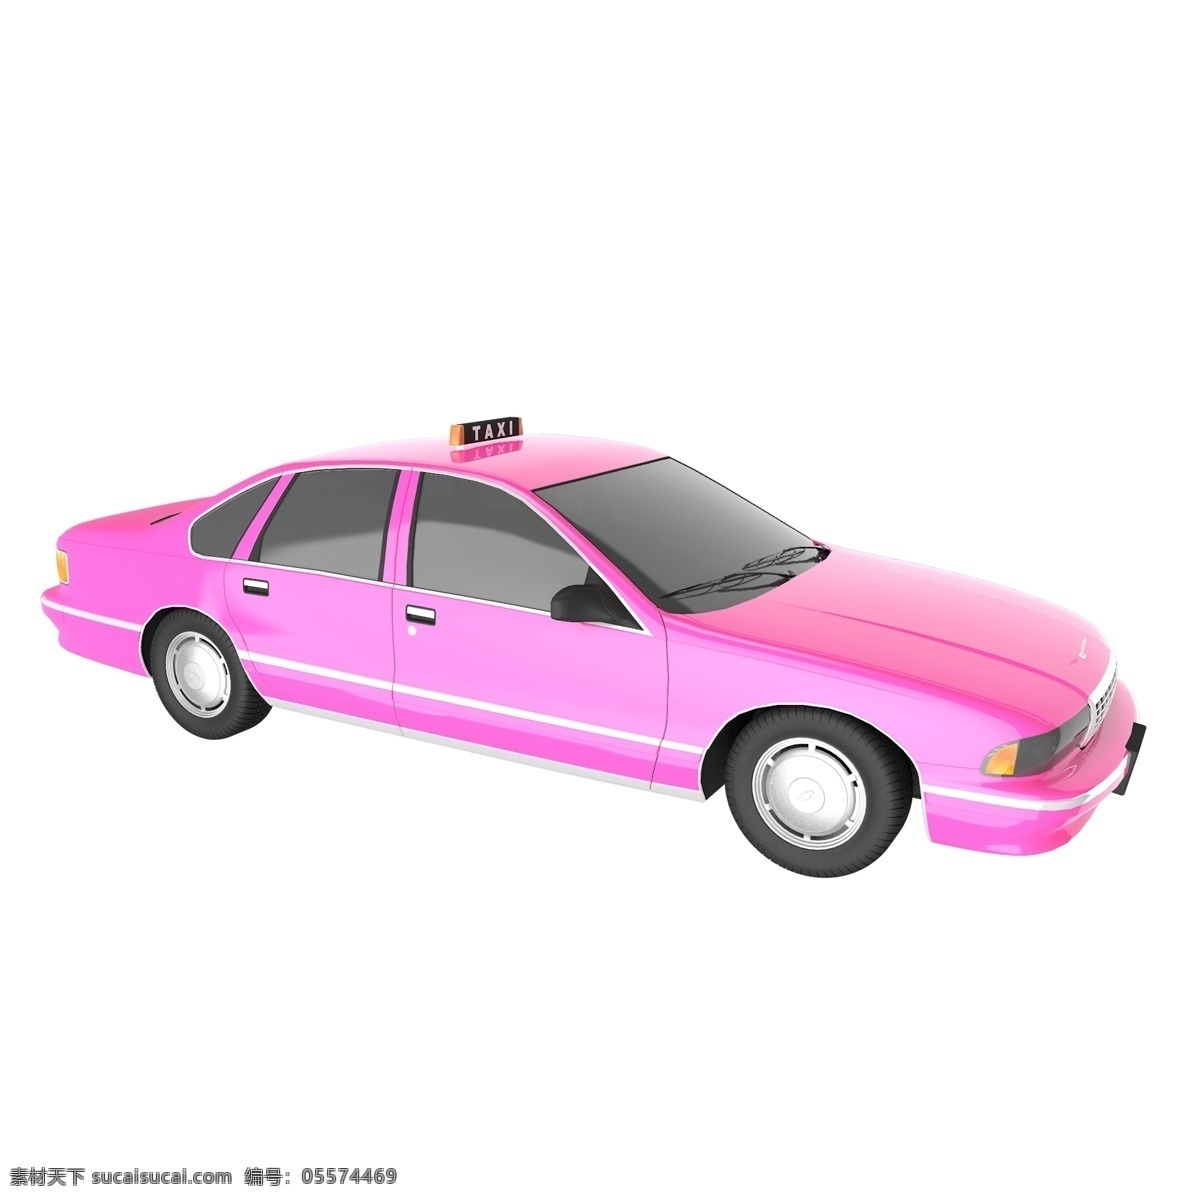 立体 粉色 出租车 计程车 立体计程车 粉色出租车 粉色计程车 交通工具 立体交通工具